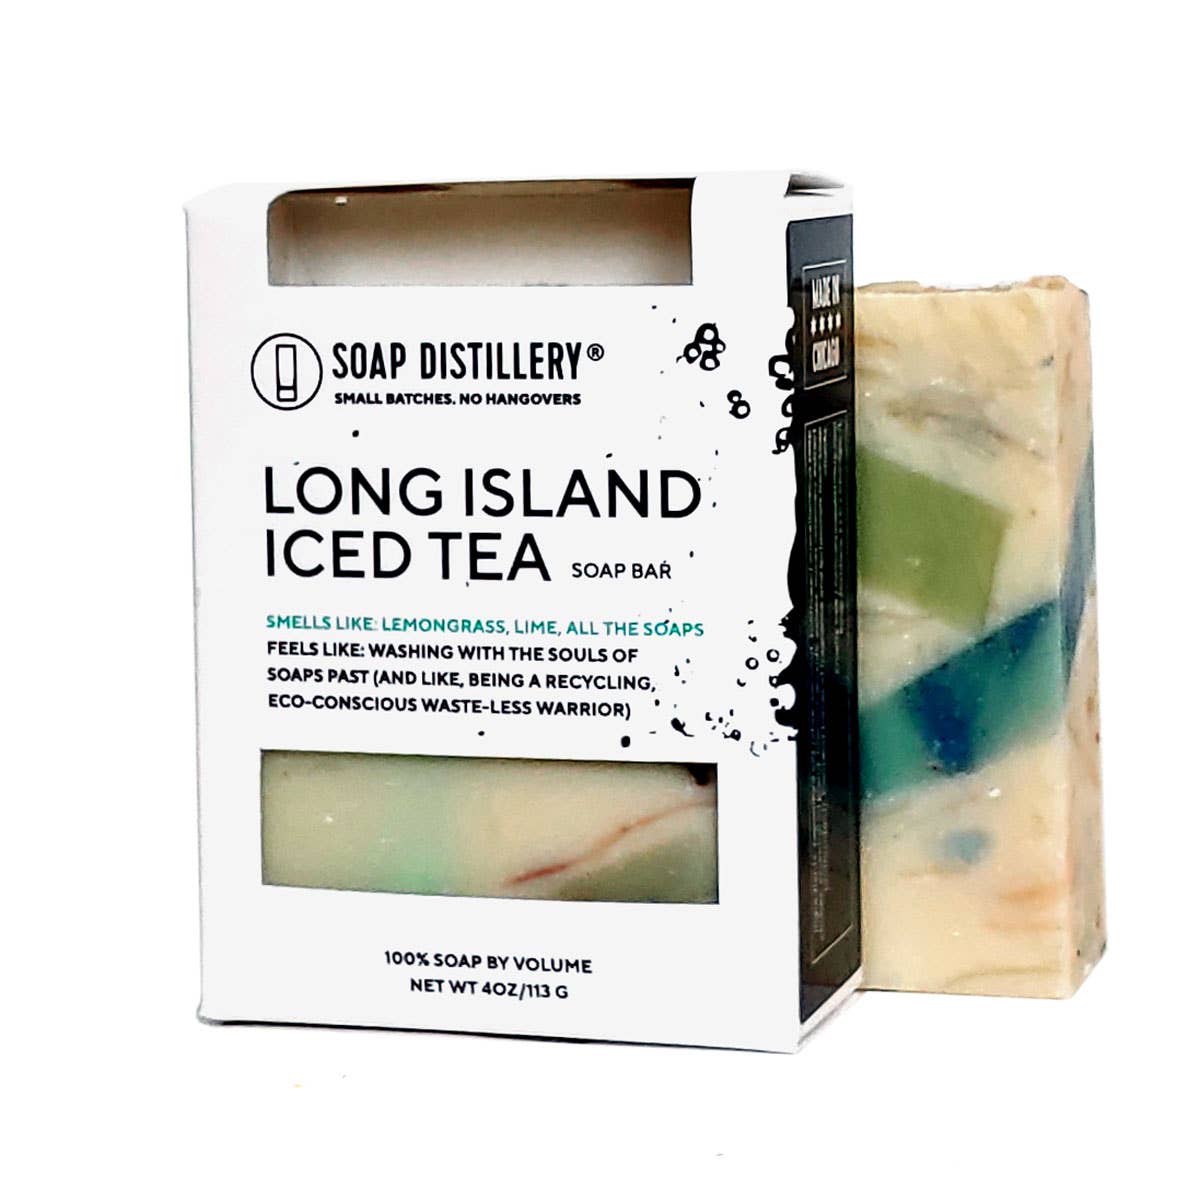 Long Island Iced Tea Soap Bar